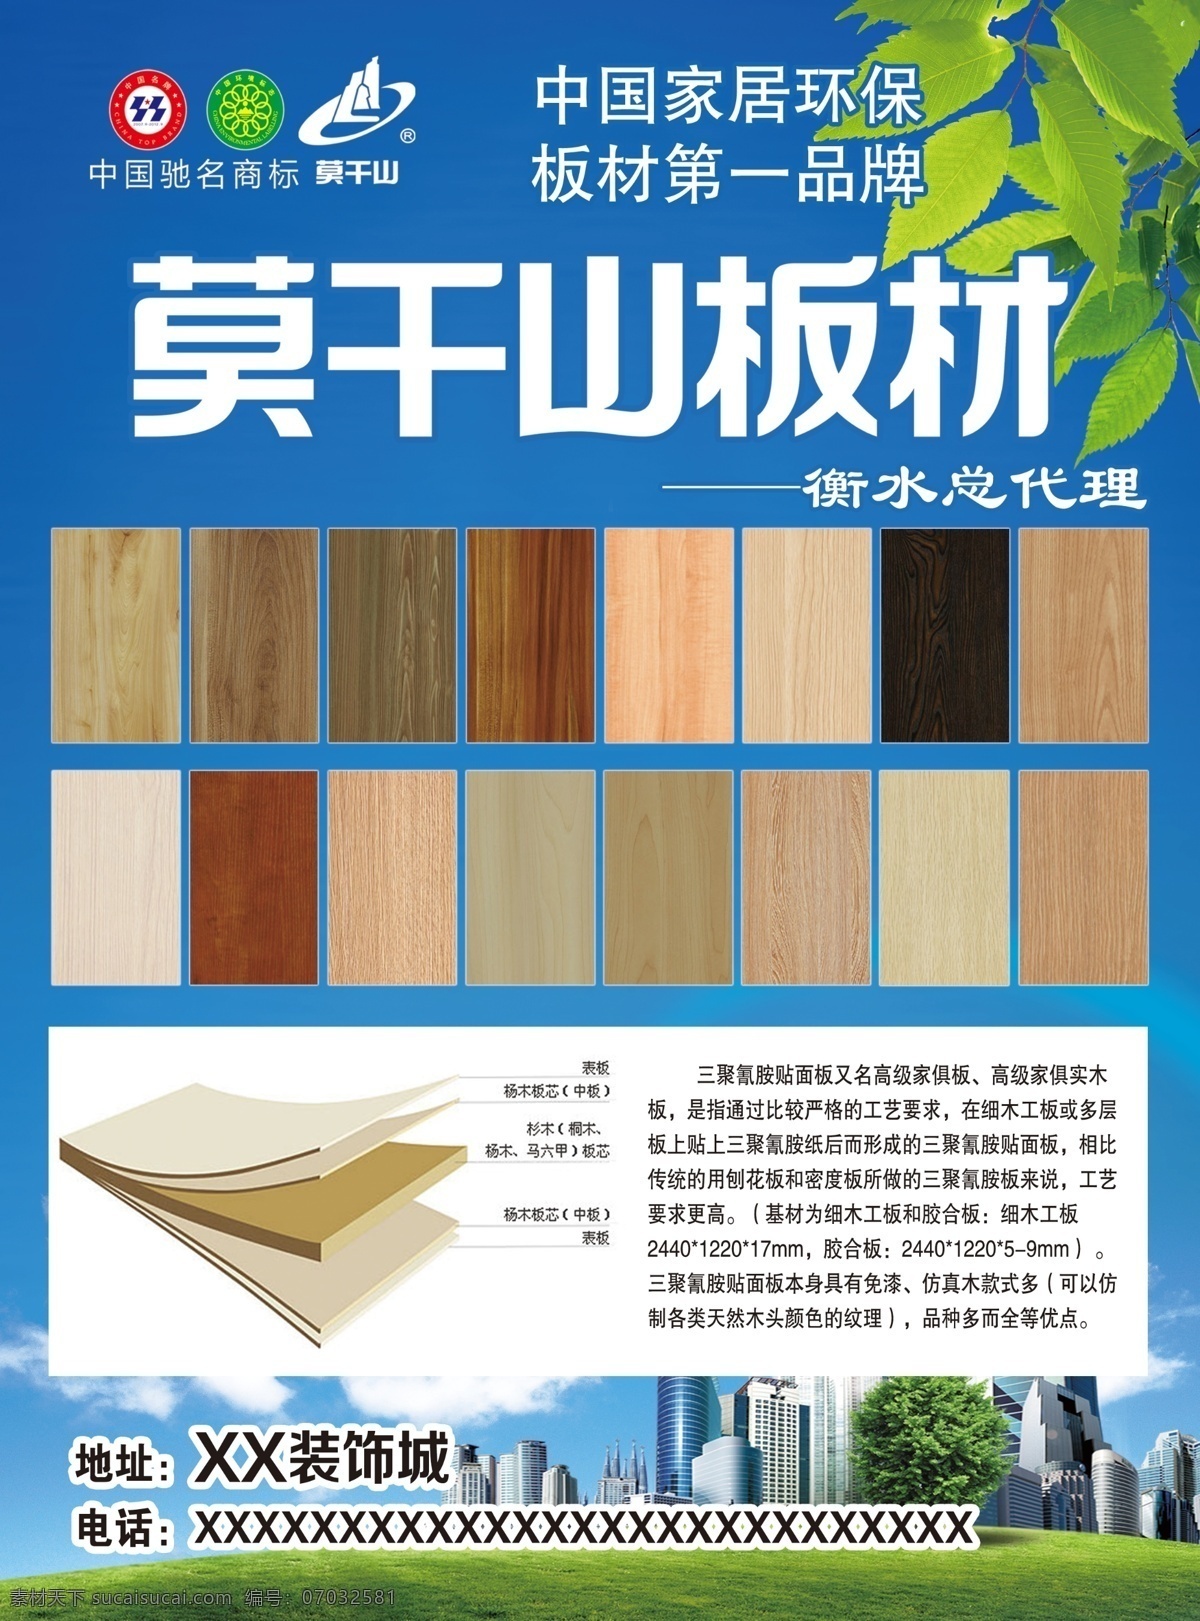 莫干山 板材 地板 木地板 简介 衡水总代理 广告设计模板 源文件